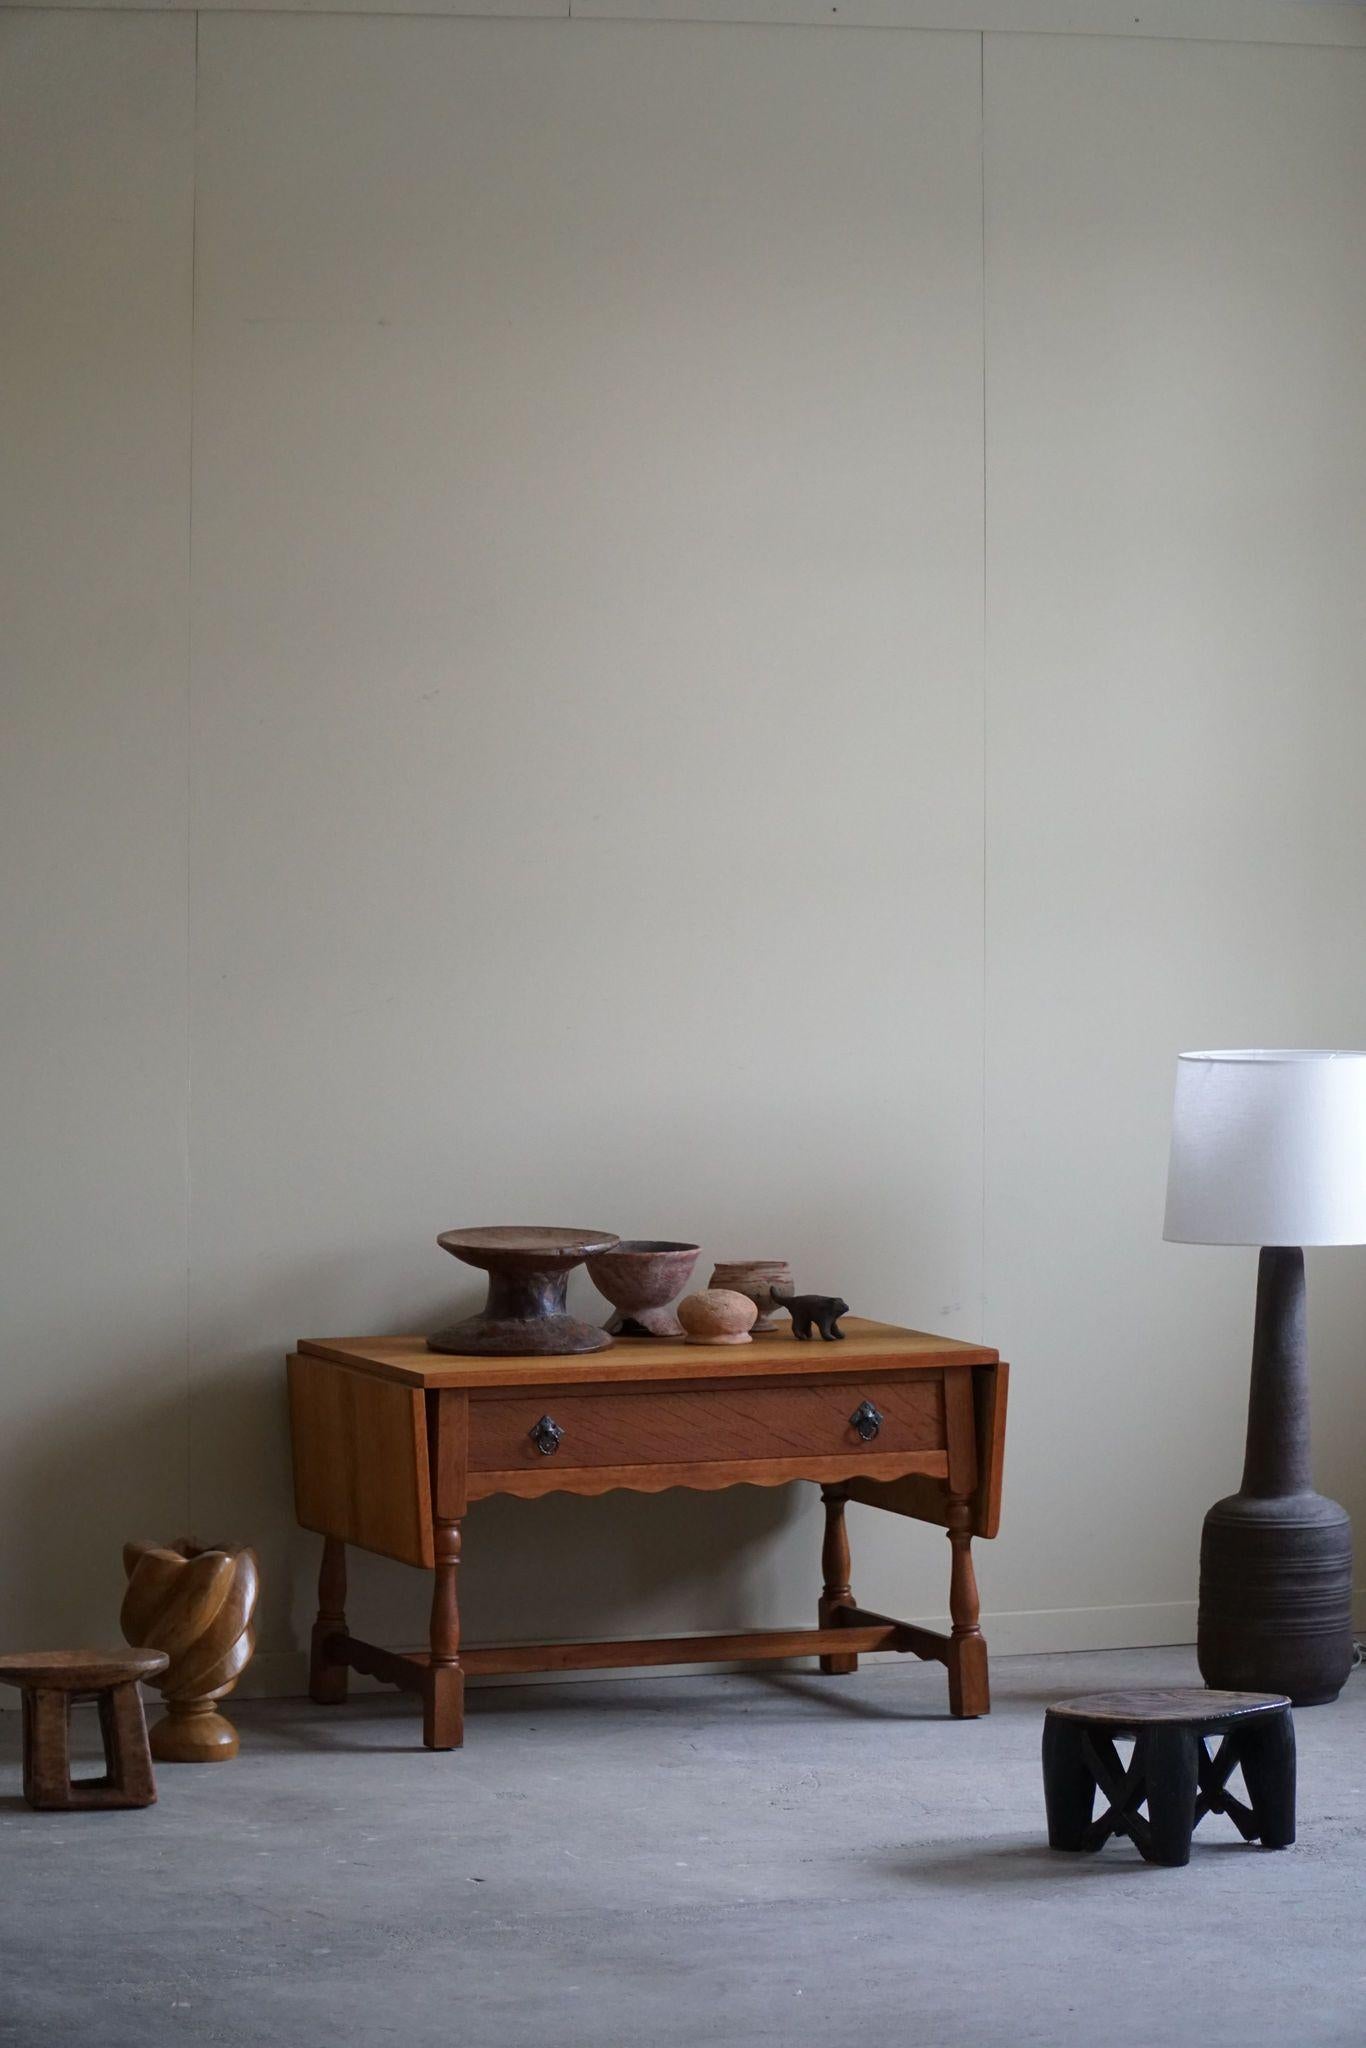 Wir stellen einen dänischen Klapptisch aus der Mitte des Jahrhunderts vor, der aus Eichenholz gefertigt und vom ikonischen Stil von Henning Kjærnulf aus den 1960er Jahren inspiriert ist. Der aus Eichenholz gefertigte Tisch strahlt Wärme und